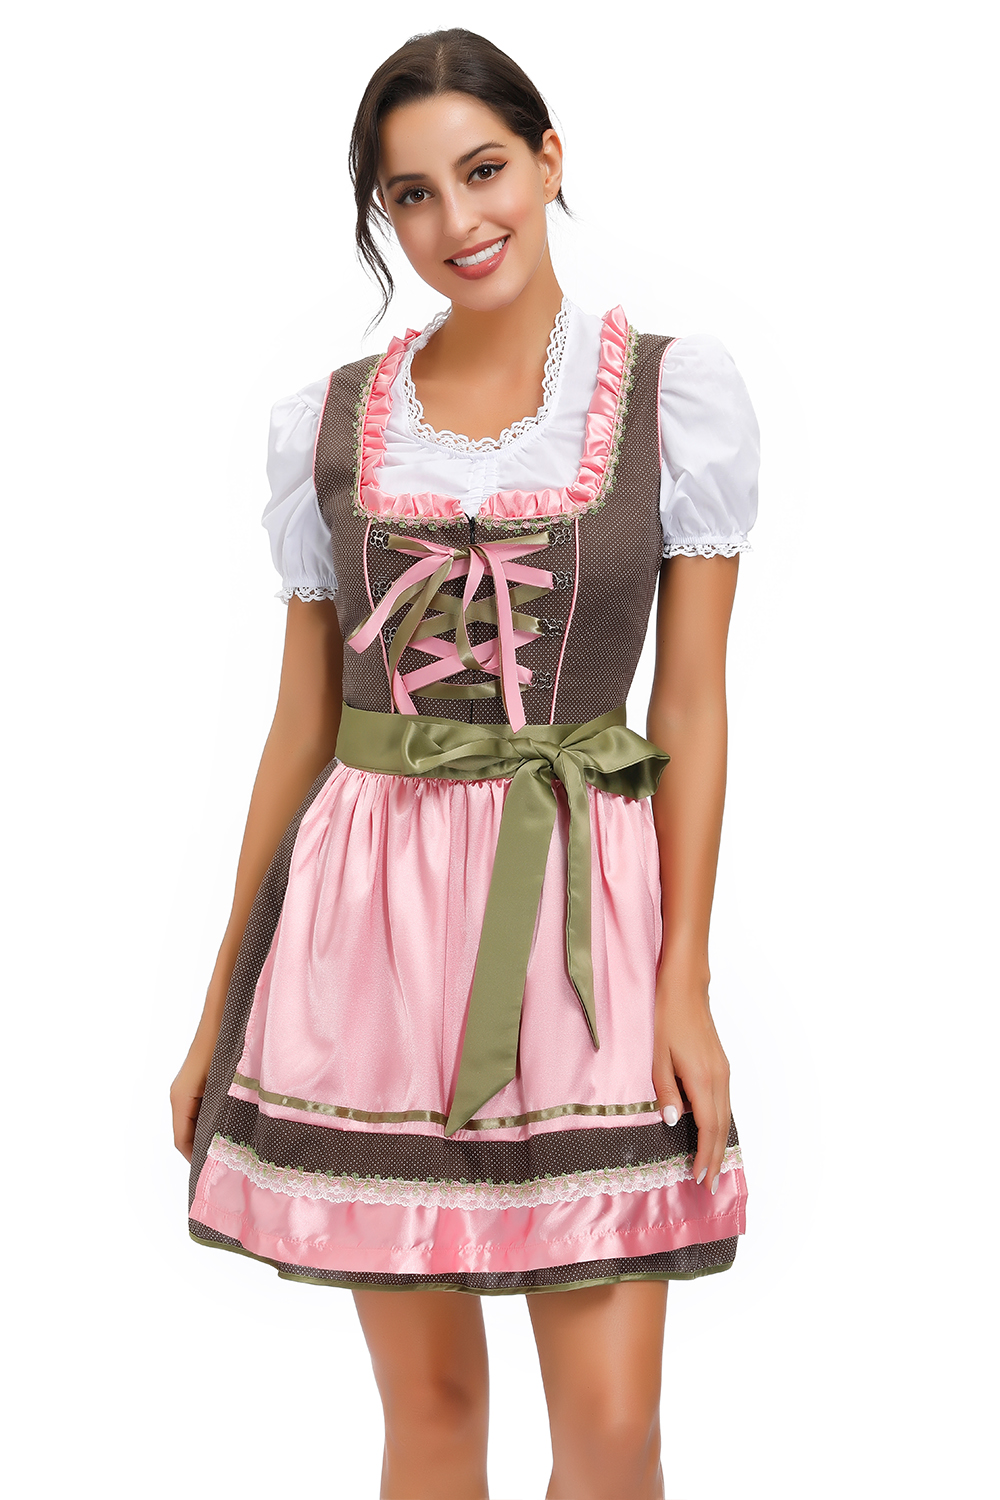 Plus Size Womens German Dirndl Dress Oktoberfest Costumes